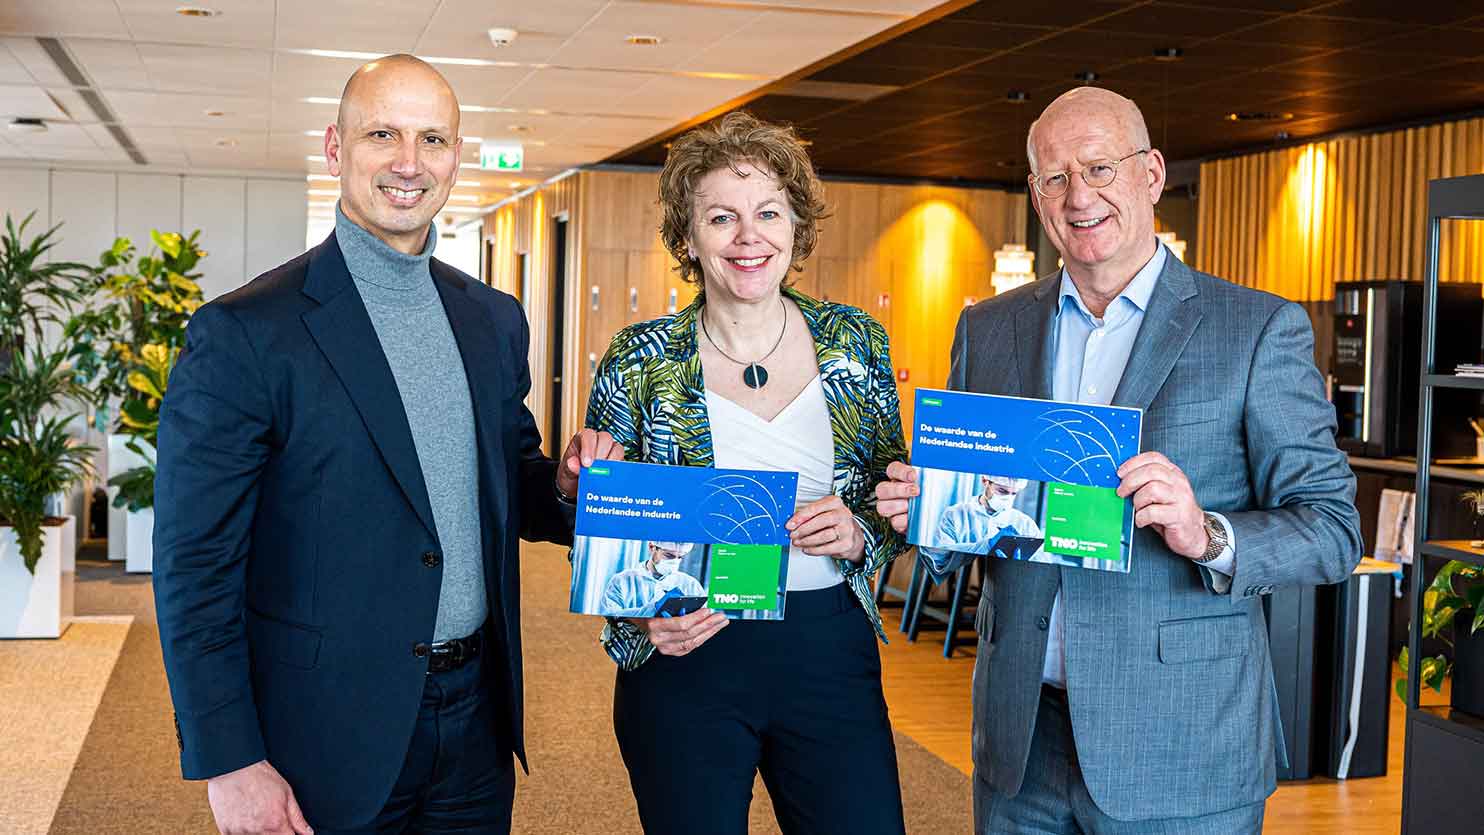 CEO TNO Tjark Tjin-A-Tsoi overhandigt TNO rapport ‘De waarde van de Nederlandse industrie’ aan Ingrid Thijssen (voorzitter VNO-NCW) en Theo Henrar (voorzitter FME)